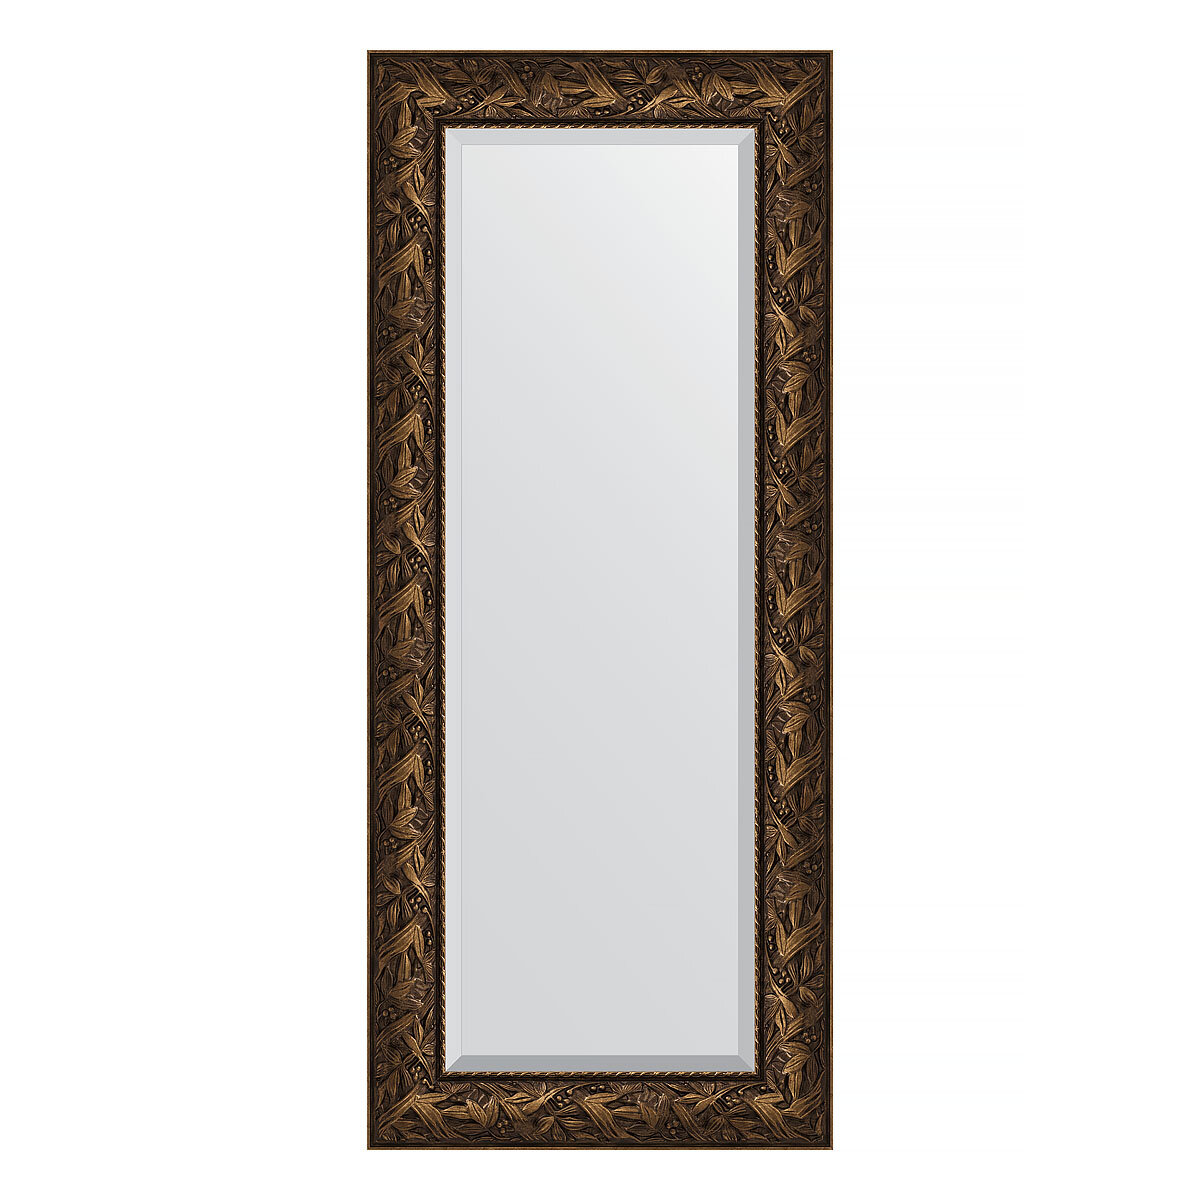 Зеркало настенное с фацетом EVOFORM в багетной раме Византия бронза, 59х139 см, для гостиной, прихожей, кабинета, спальни и ванной комнаты, BY 3521